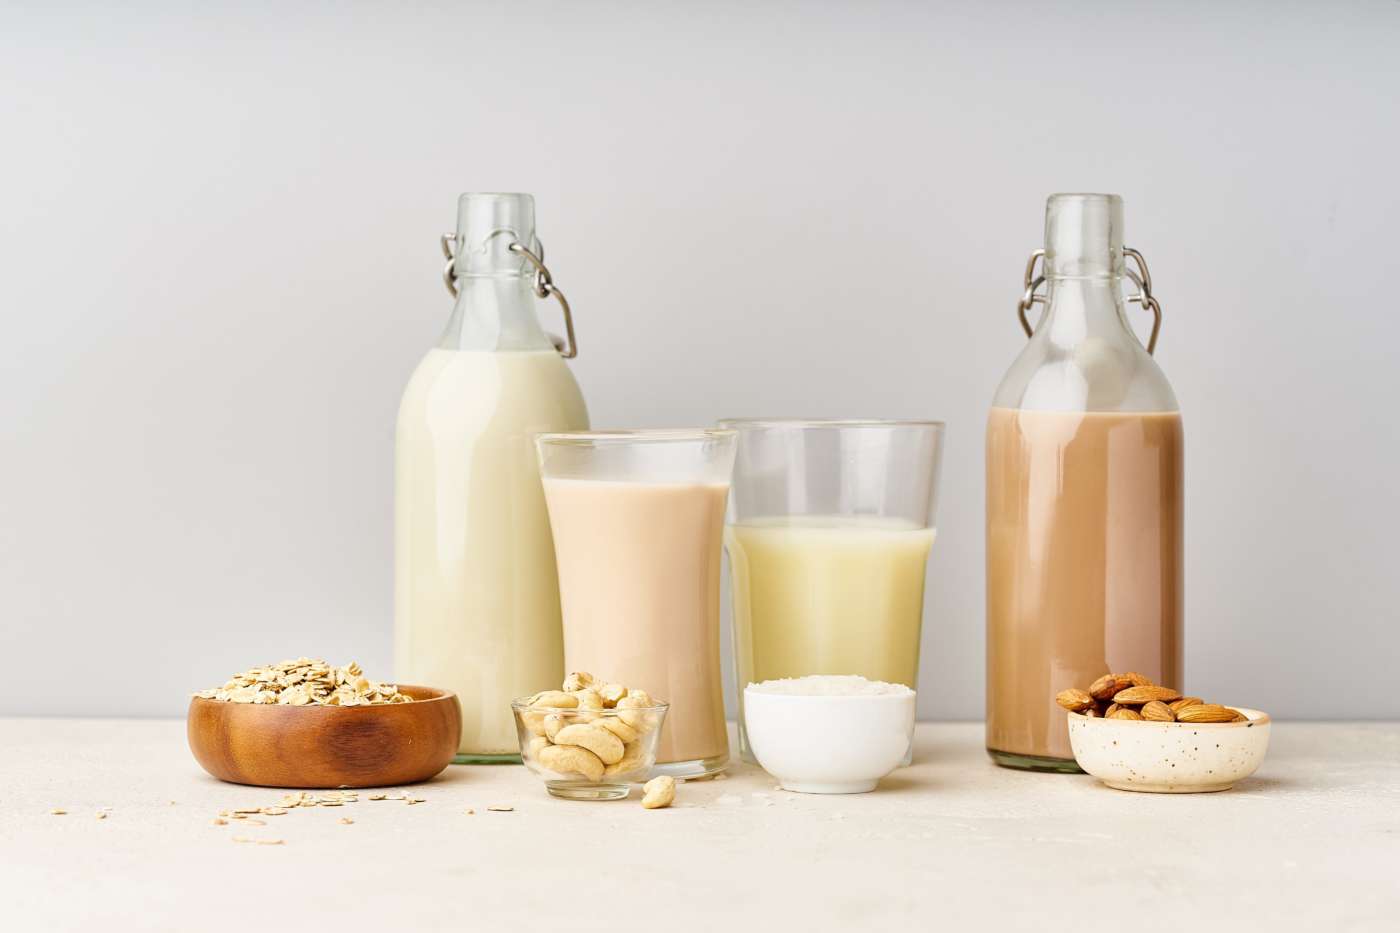 Latte vegetale: la top 5, per gli intolleranti al lattosio